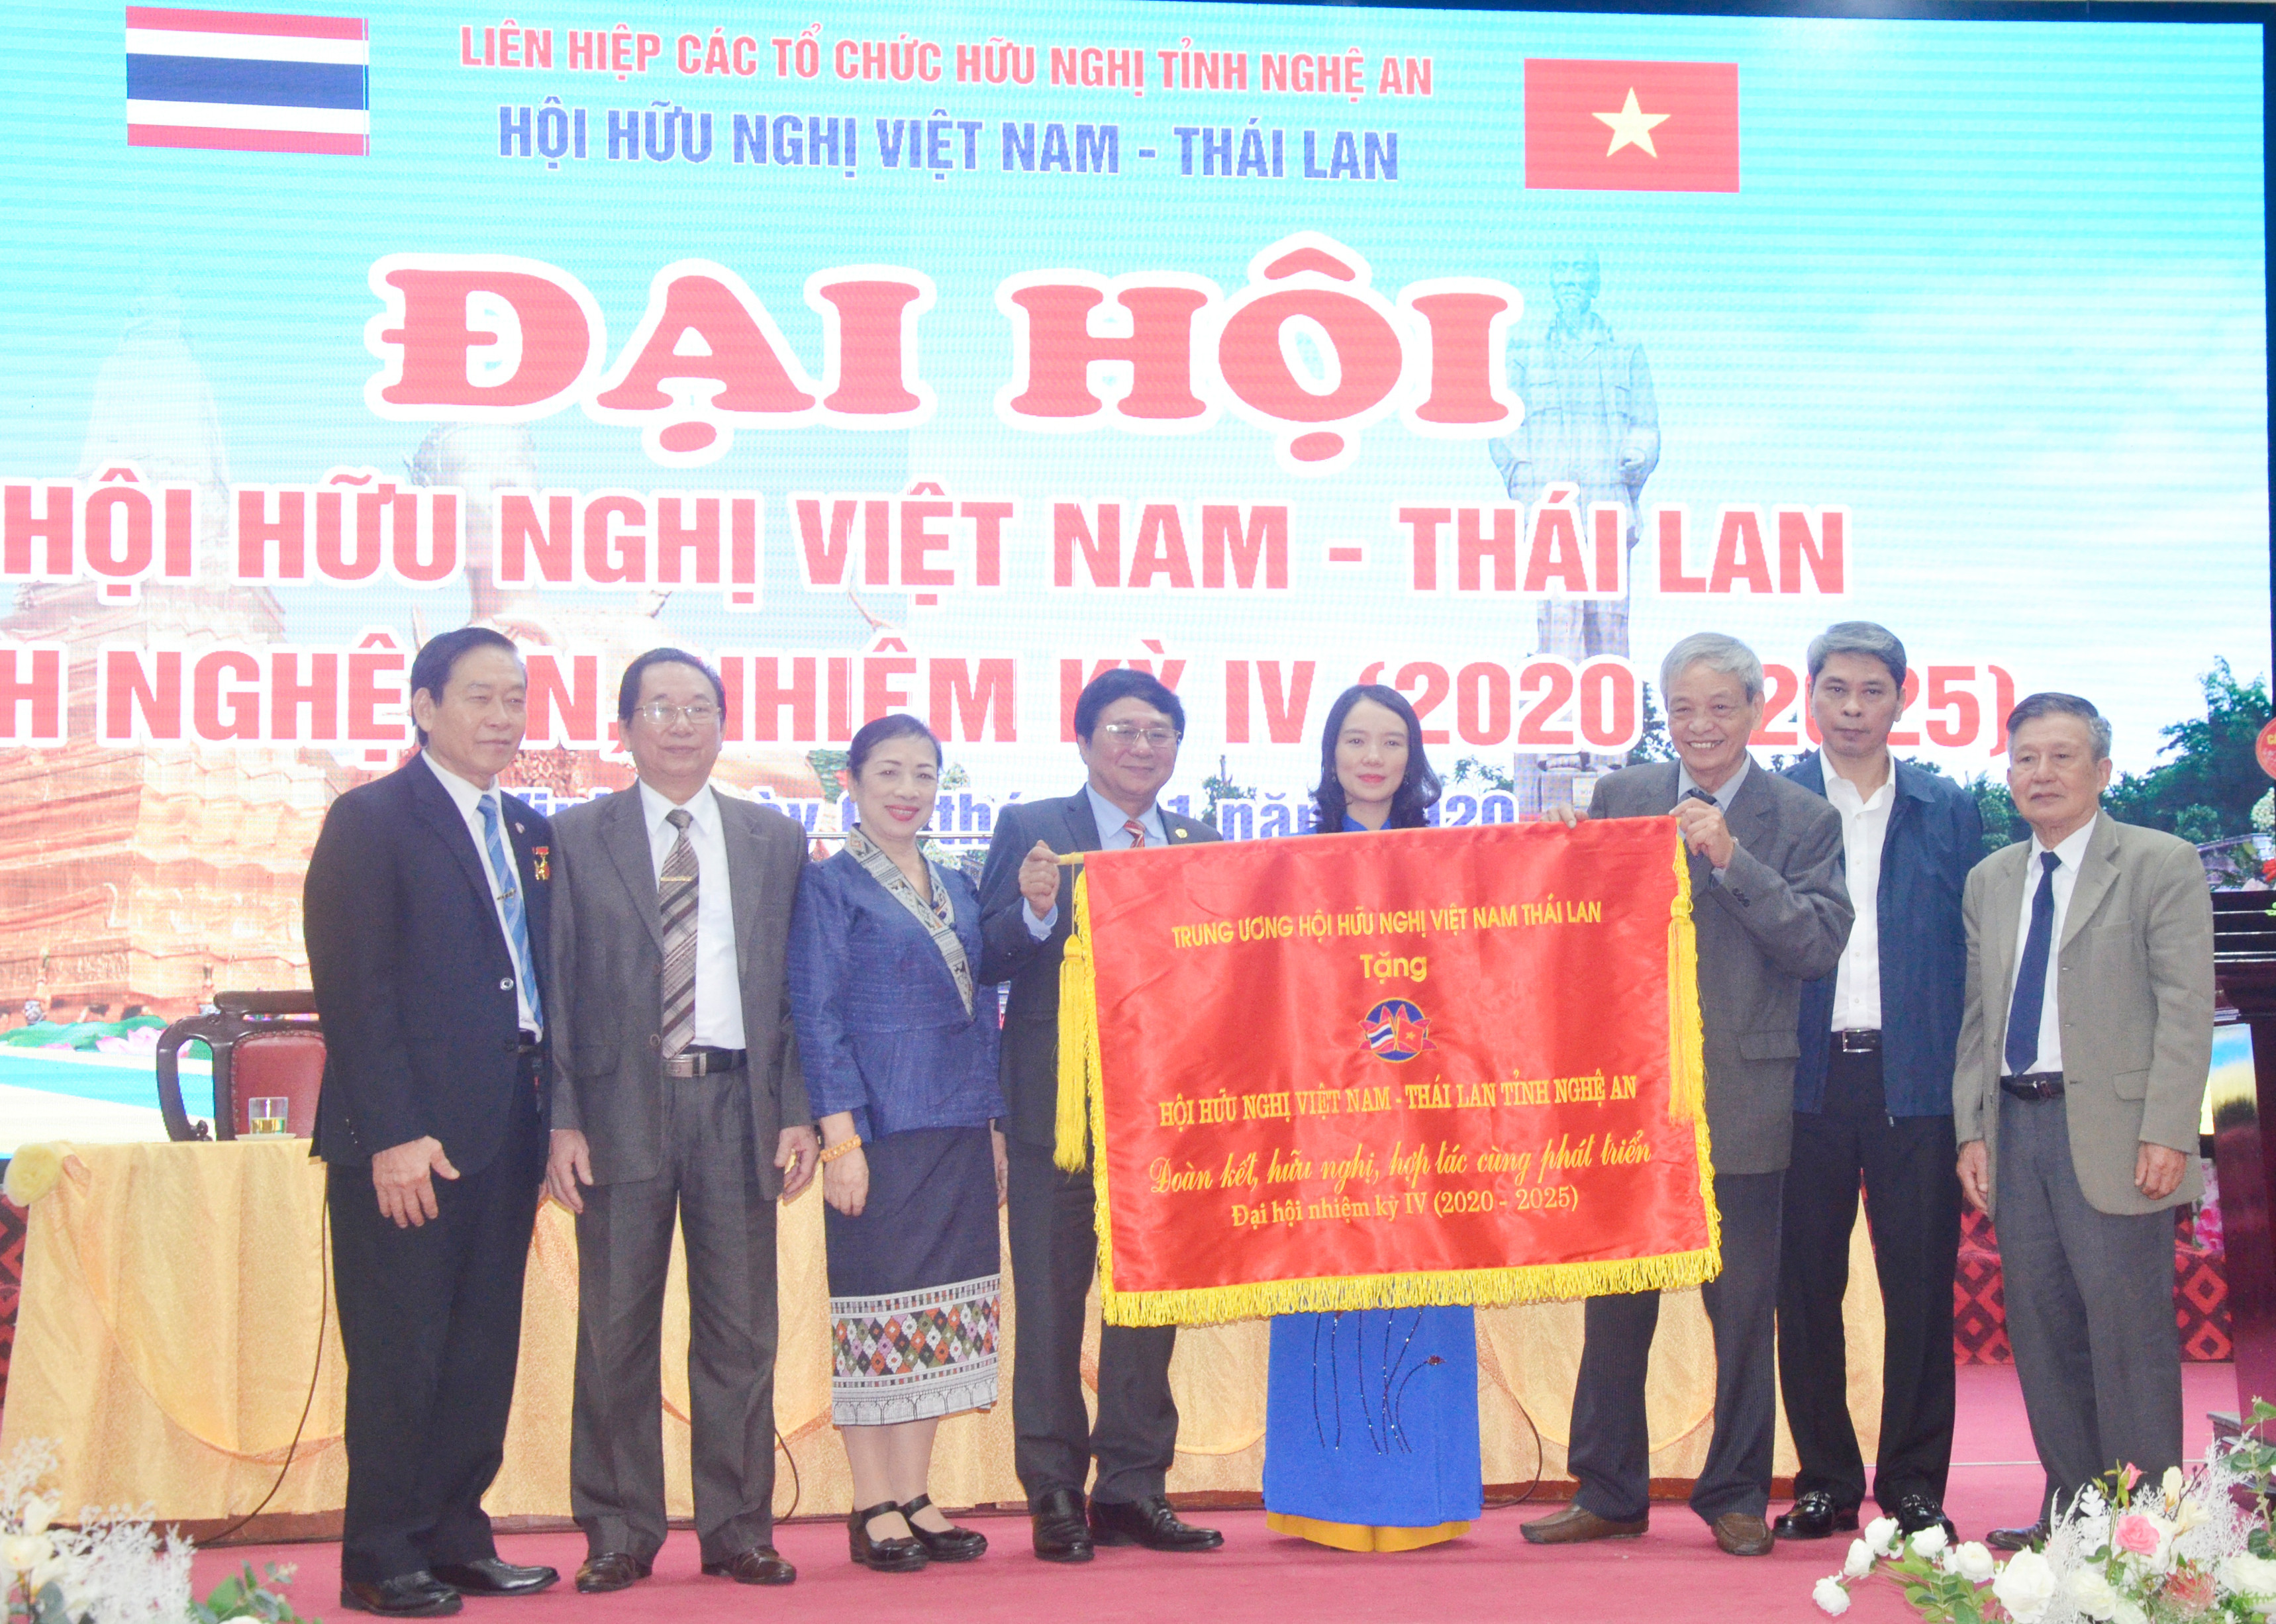 Trung ương Hội hữu nghị Việt Nam - Thái Lan tặng bức trướng cho Hội hữu nghị Việt Nam - Thái Lan tỉnh Nghệ An. Ảnh: Thanh Lê